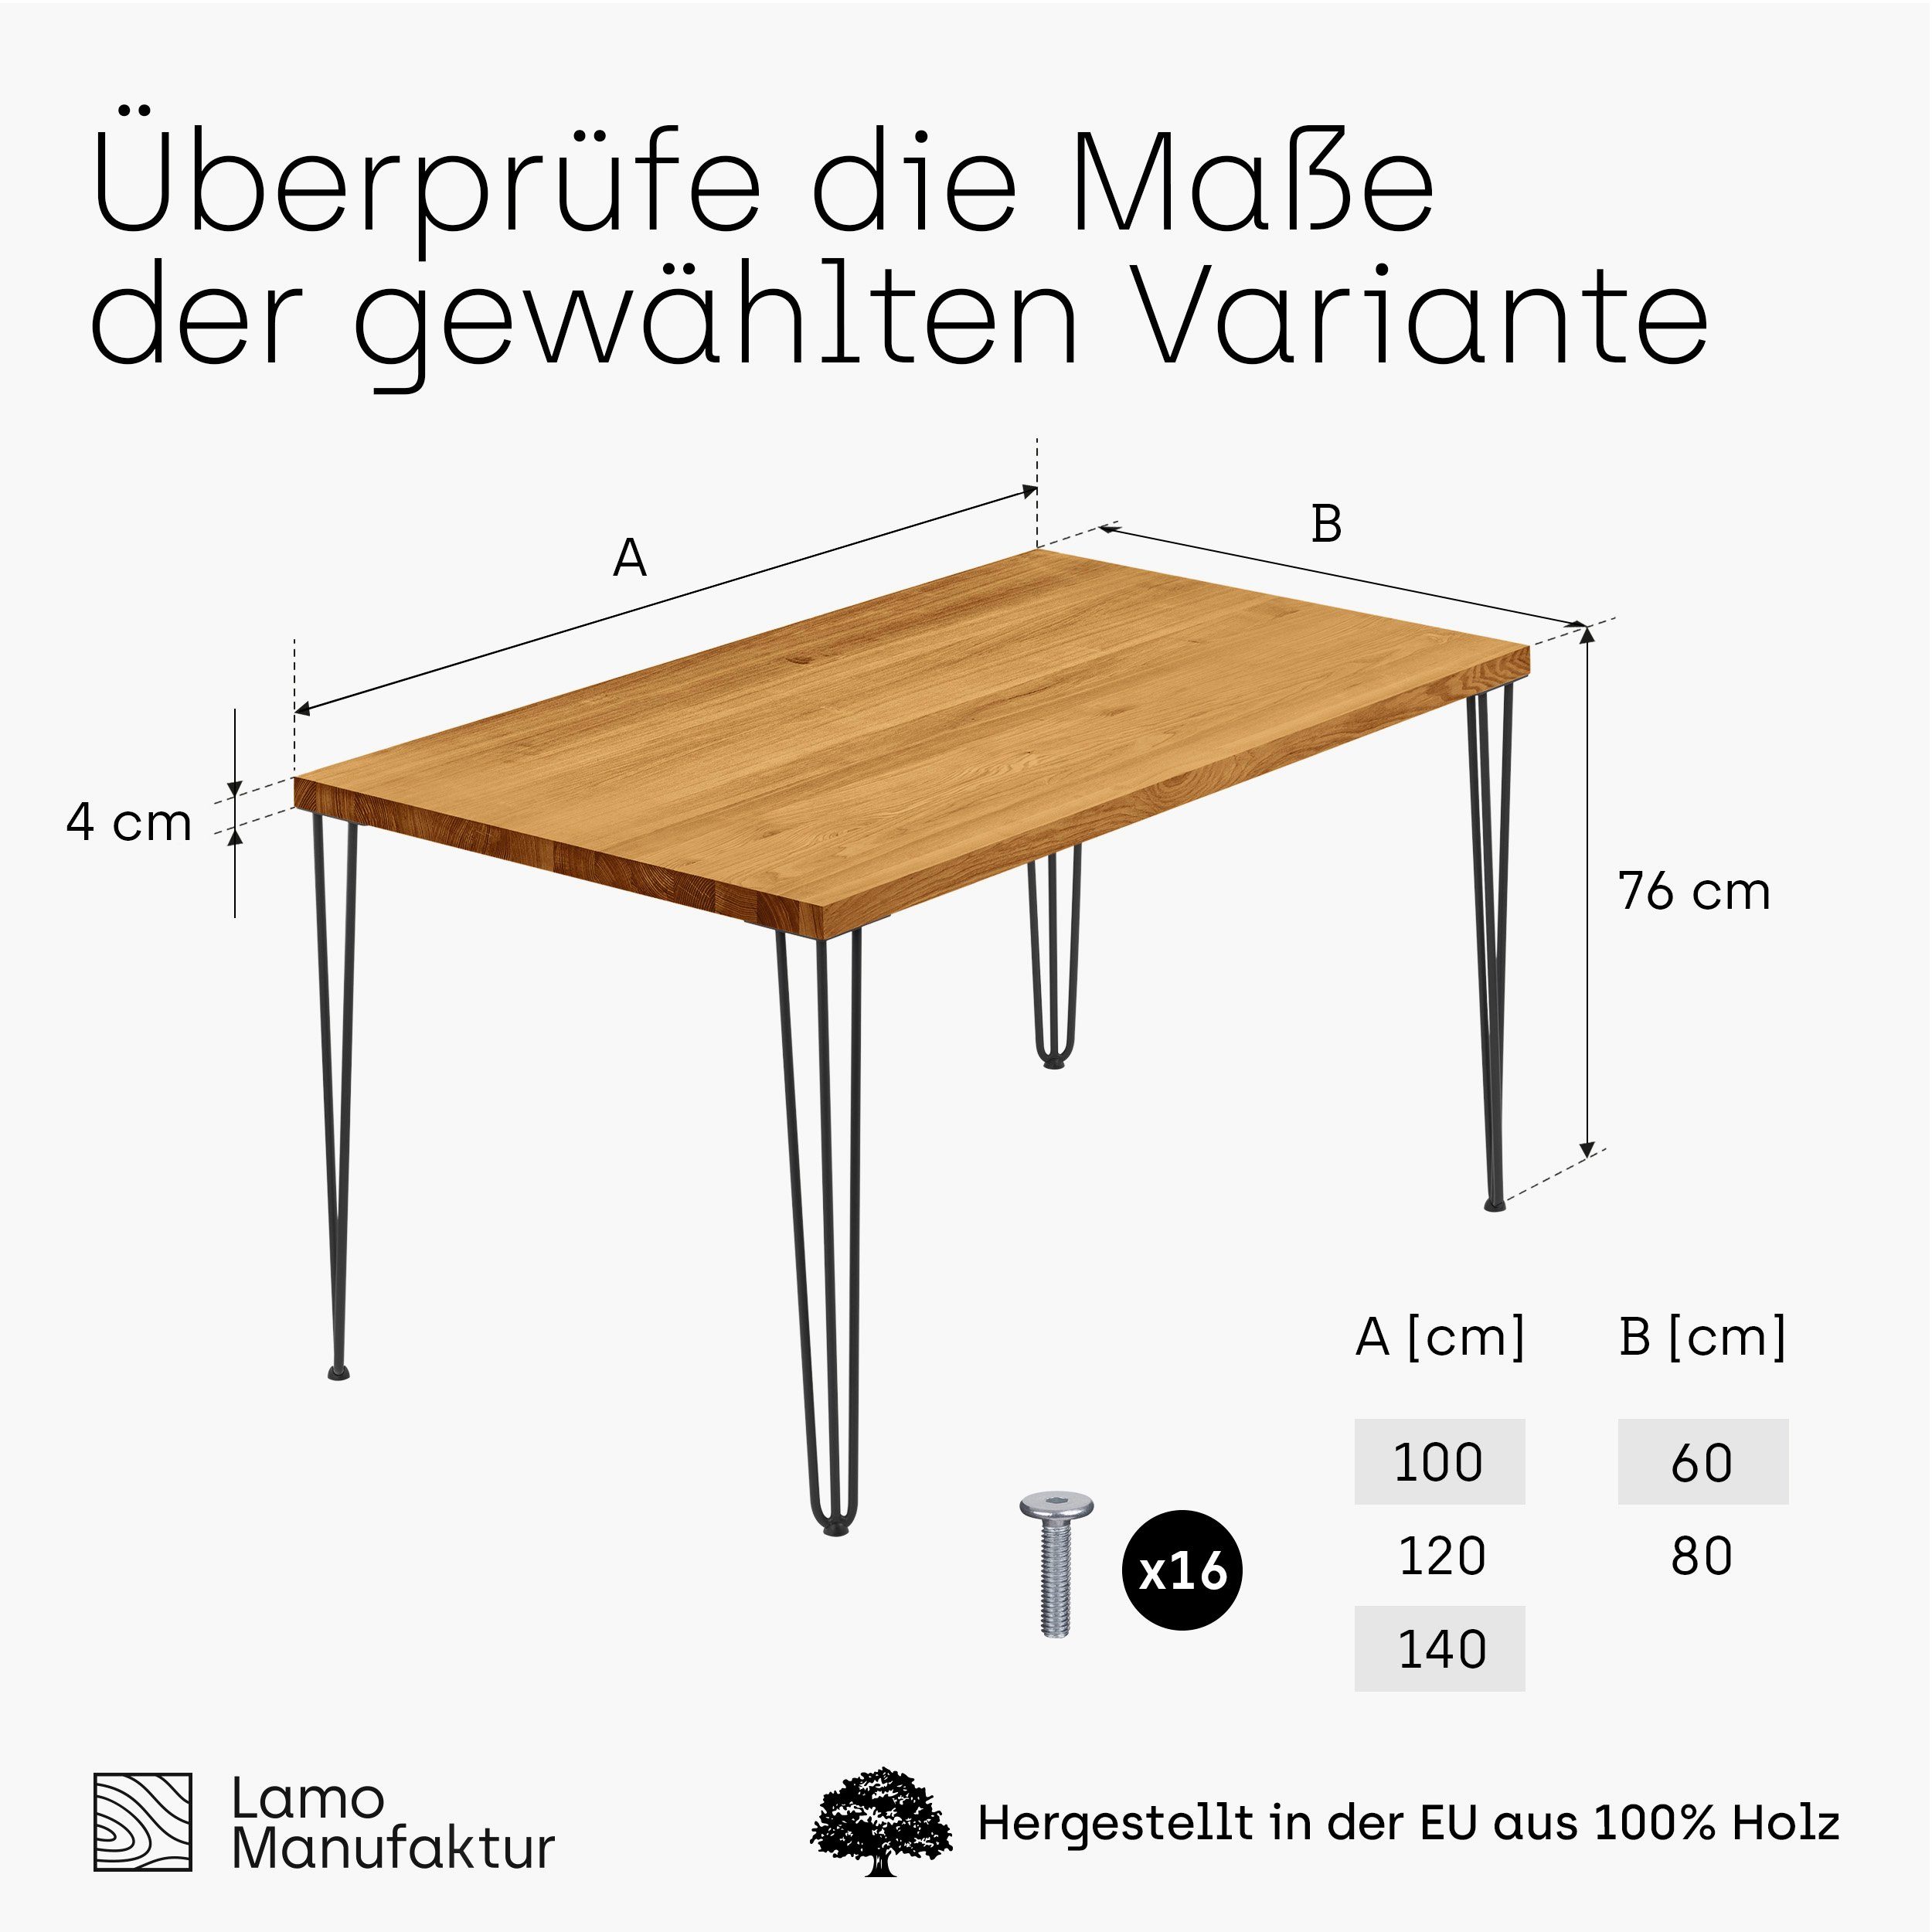 Rustikal LAMO Manufaktur Massivholz Küchentisch Schwarz Esstisch | (1 Tischplatte inkl. gerade Tisch), Metallgestell Kante Creative